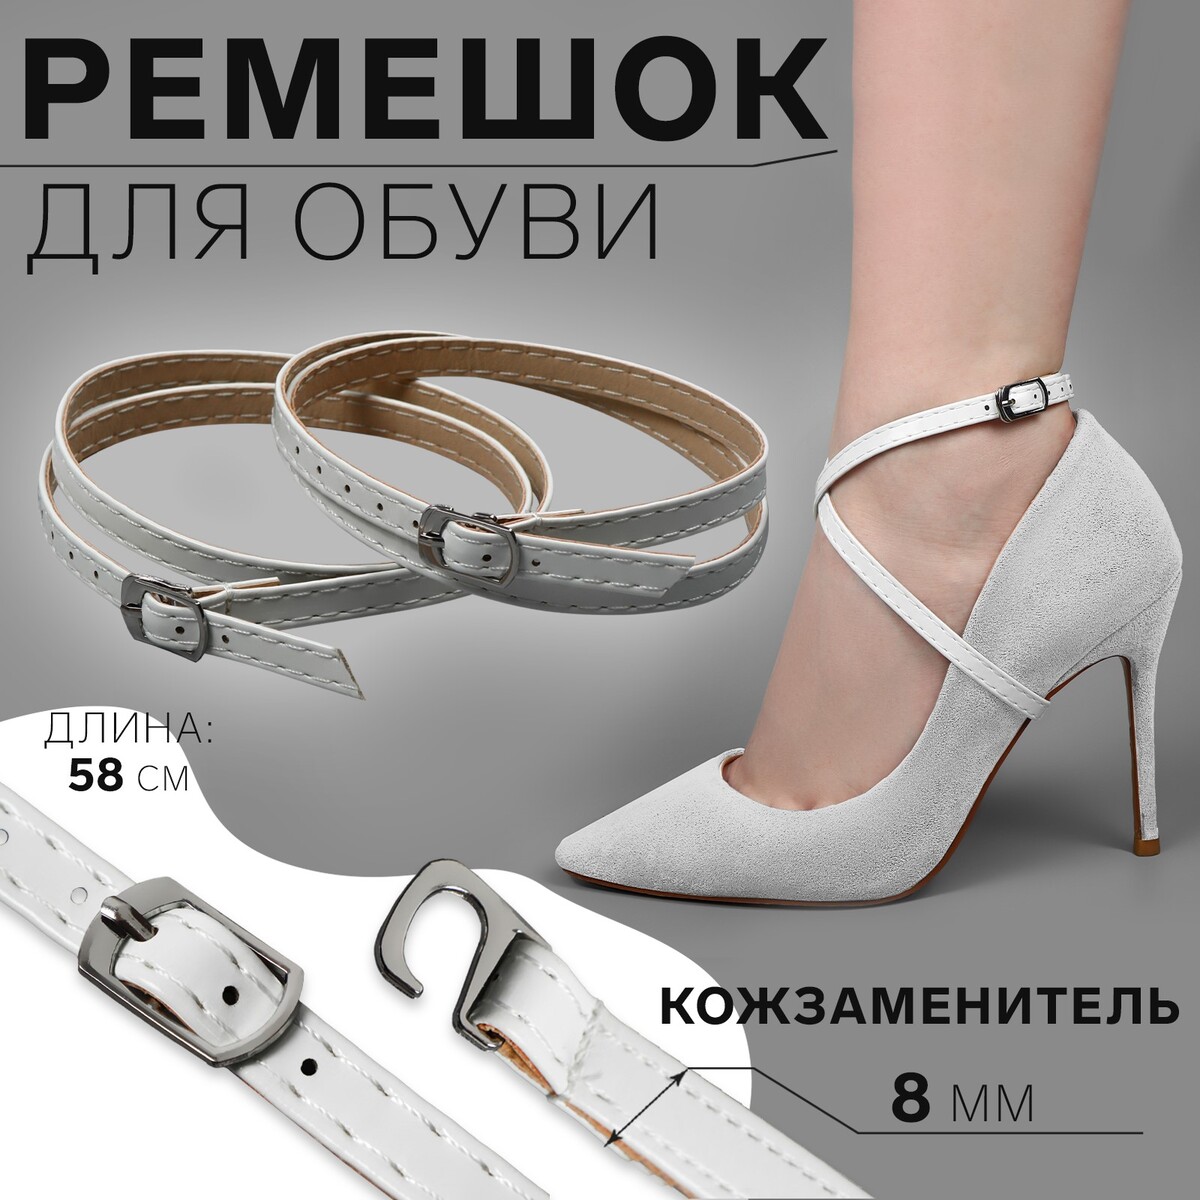 Ремешок для обуви, искусственная кожа, 58 см, 8 мм, 2 шт, цвет белый ремешок для обуви искусственная кожа 30 см 8 мм 2 шт белый